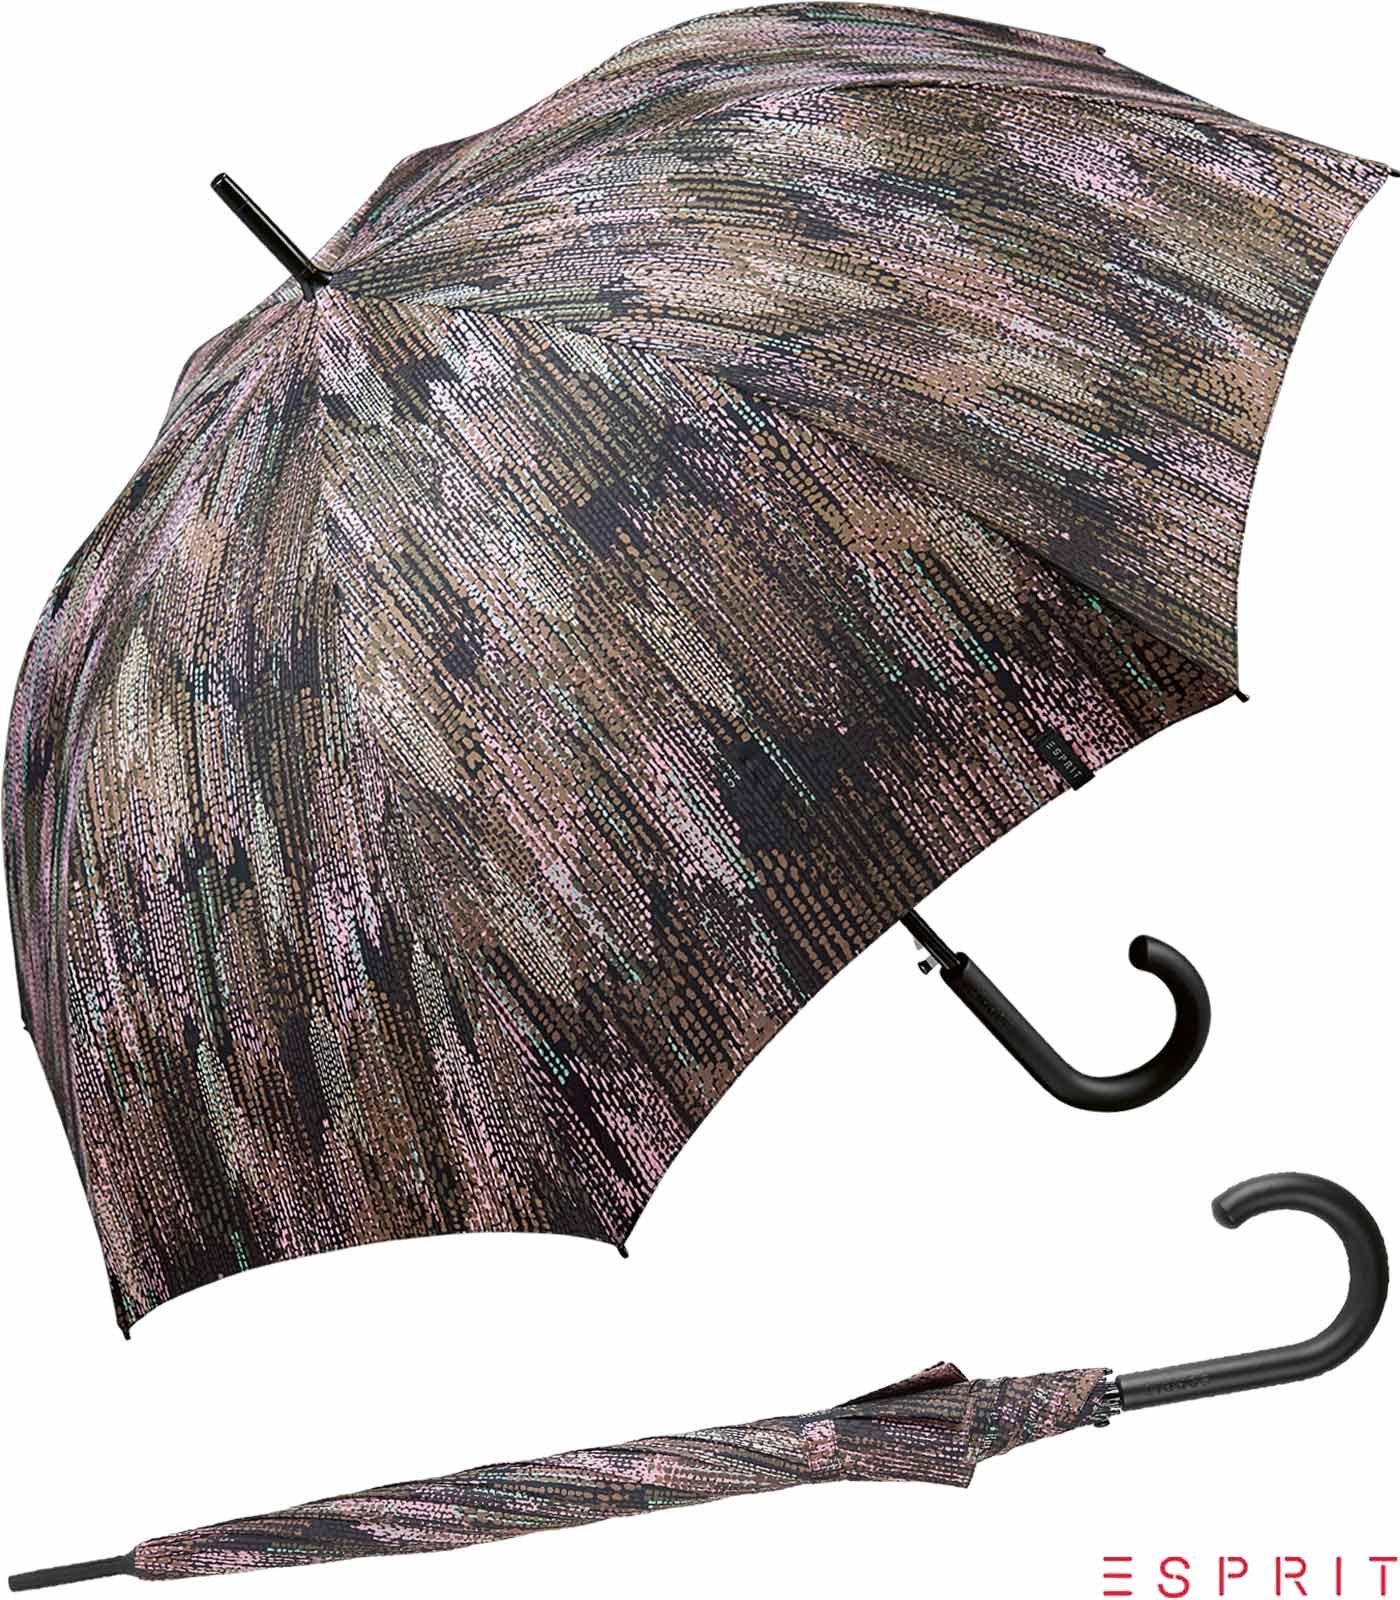 Esprit Langregenschirm Damen mit Auf-Automatik - Blurred Edges - taupe gray, groß, stabil, in gedeckter verwaschener Optik braun